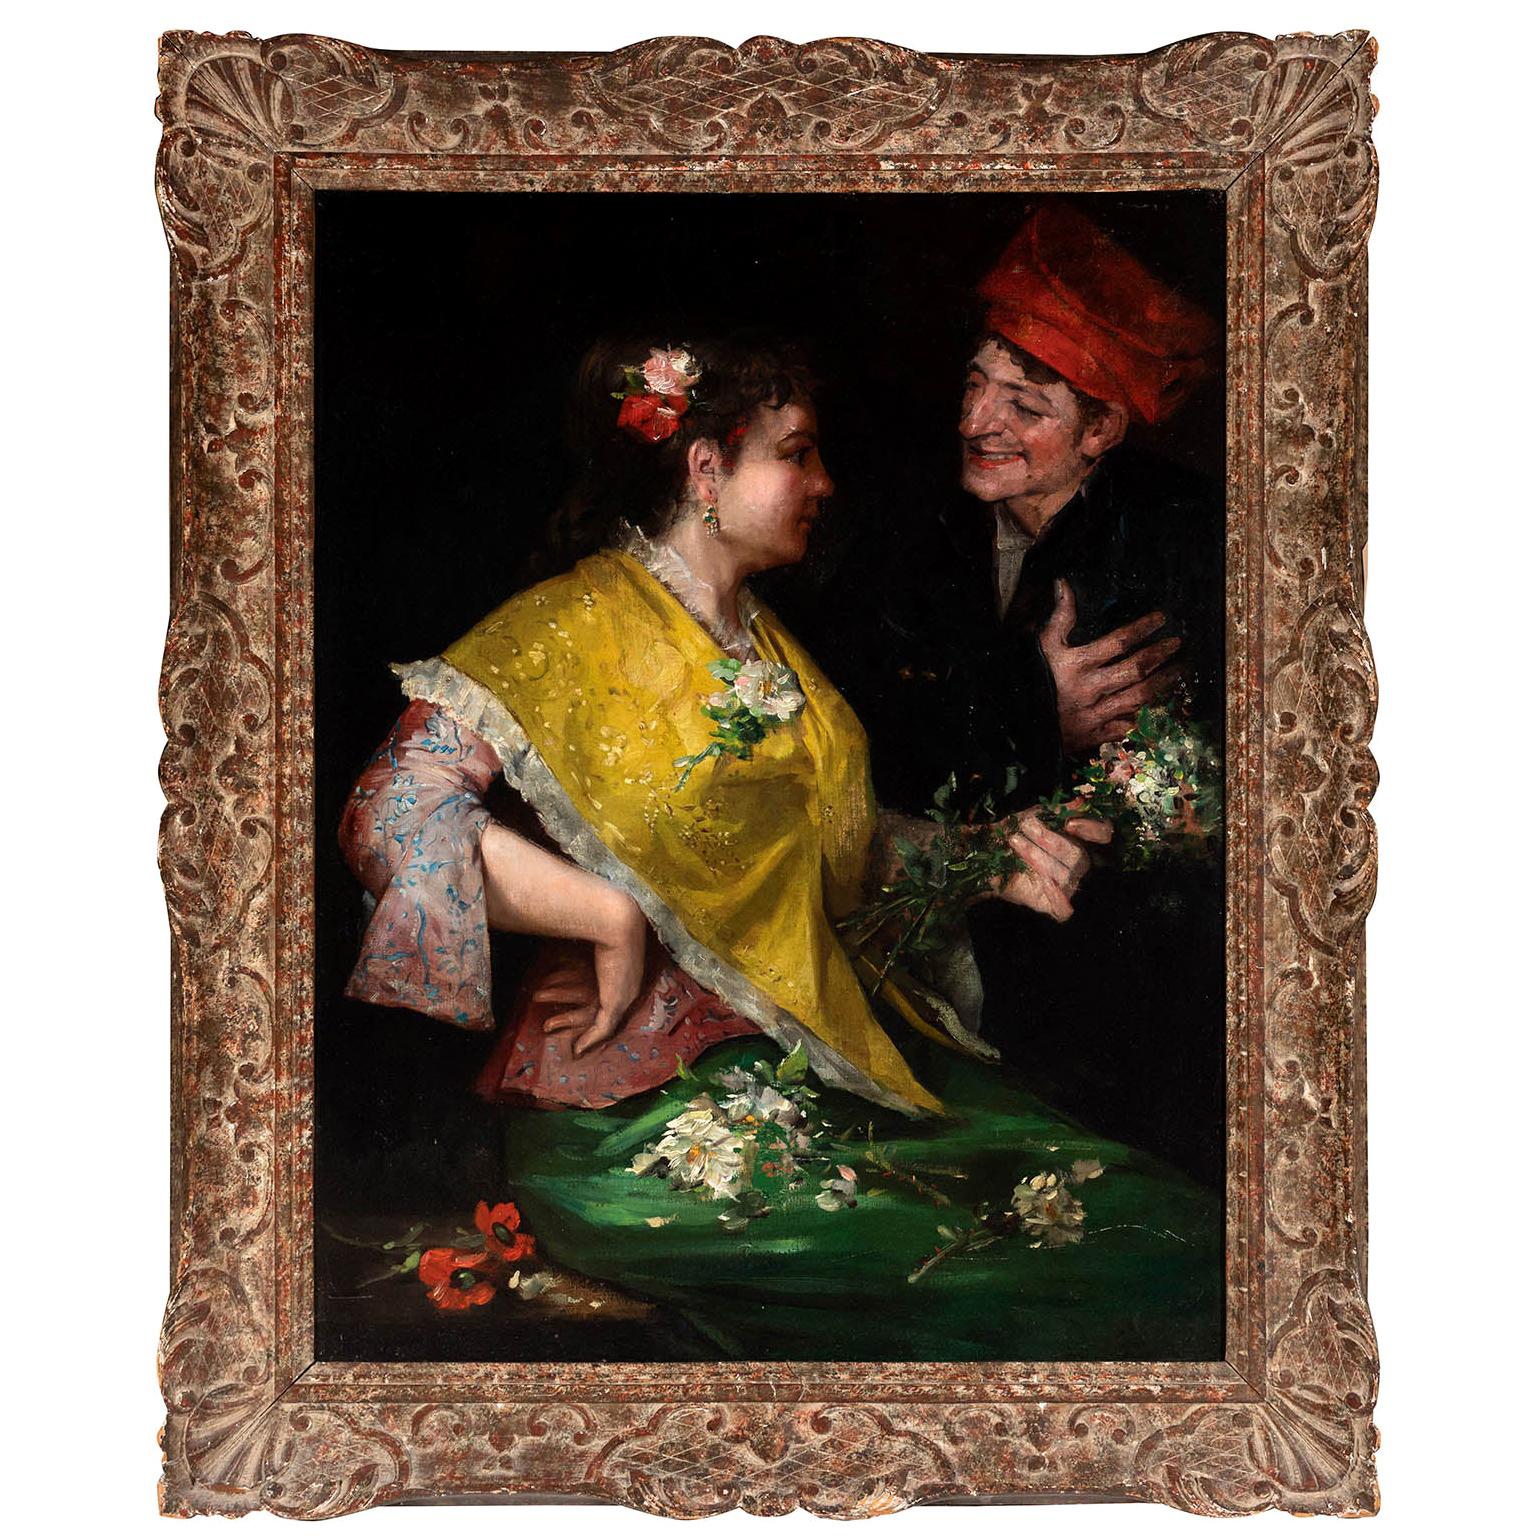 Benito Belli Peinture à l'huile sur toile de la fin du XIXe siècle représentant deux couples espagnols, sans titre